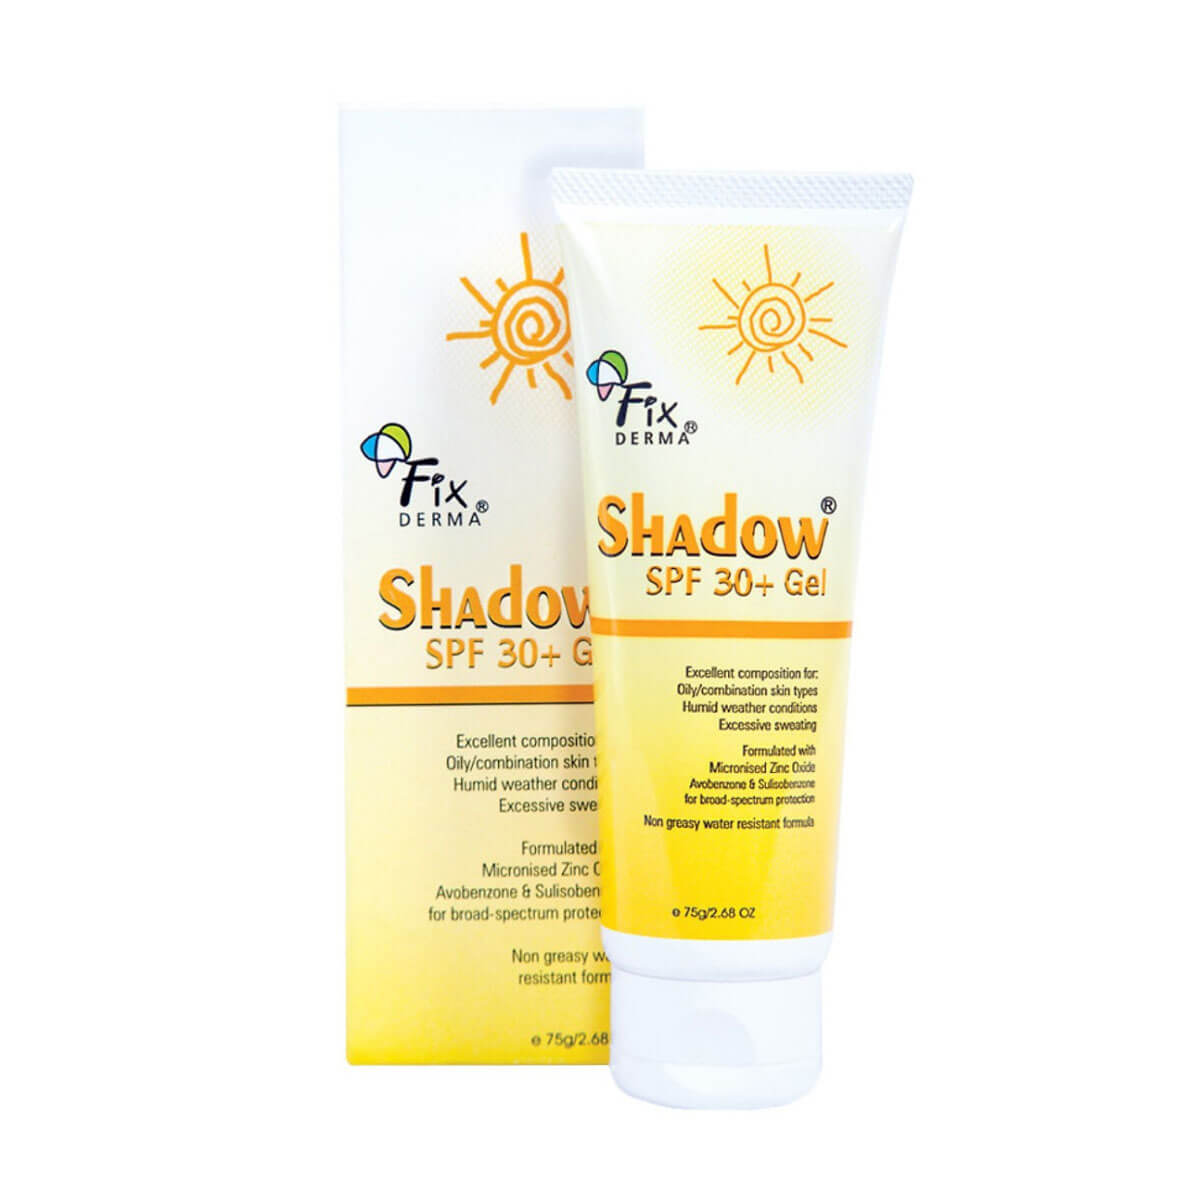 Kem chống nắng Fixderma SPF 30+ (dạng gel)